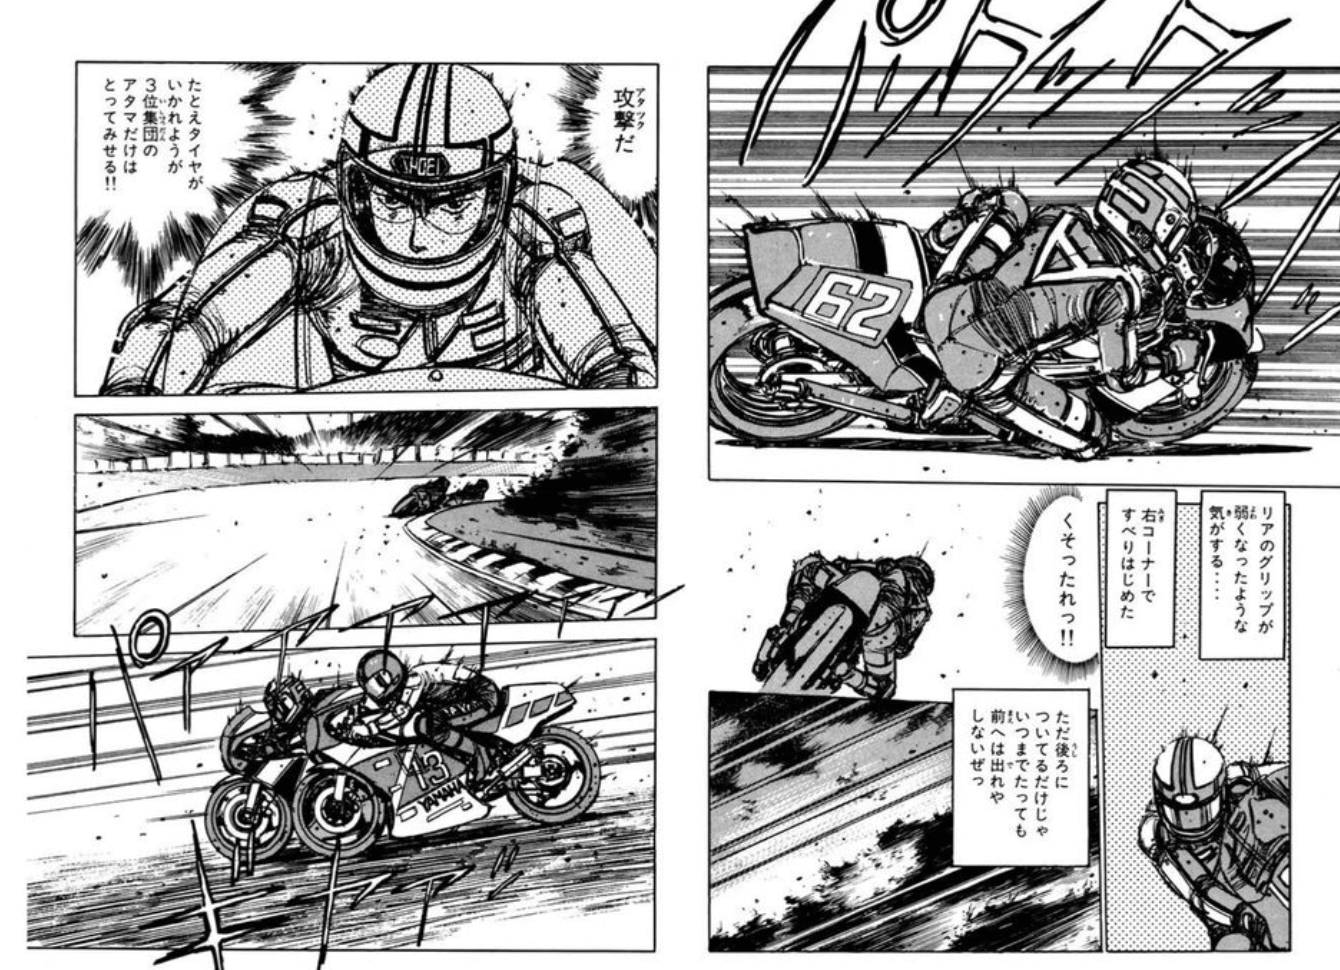 バリバリ伝説,バイク漫画